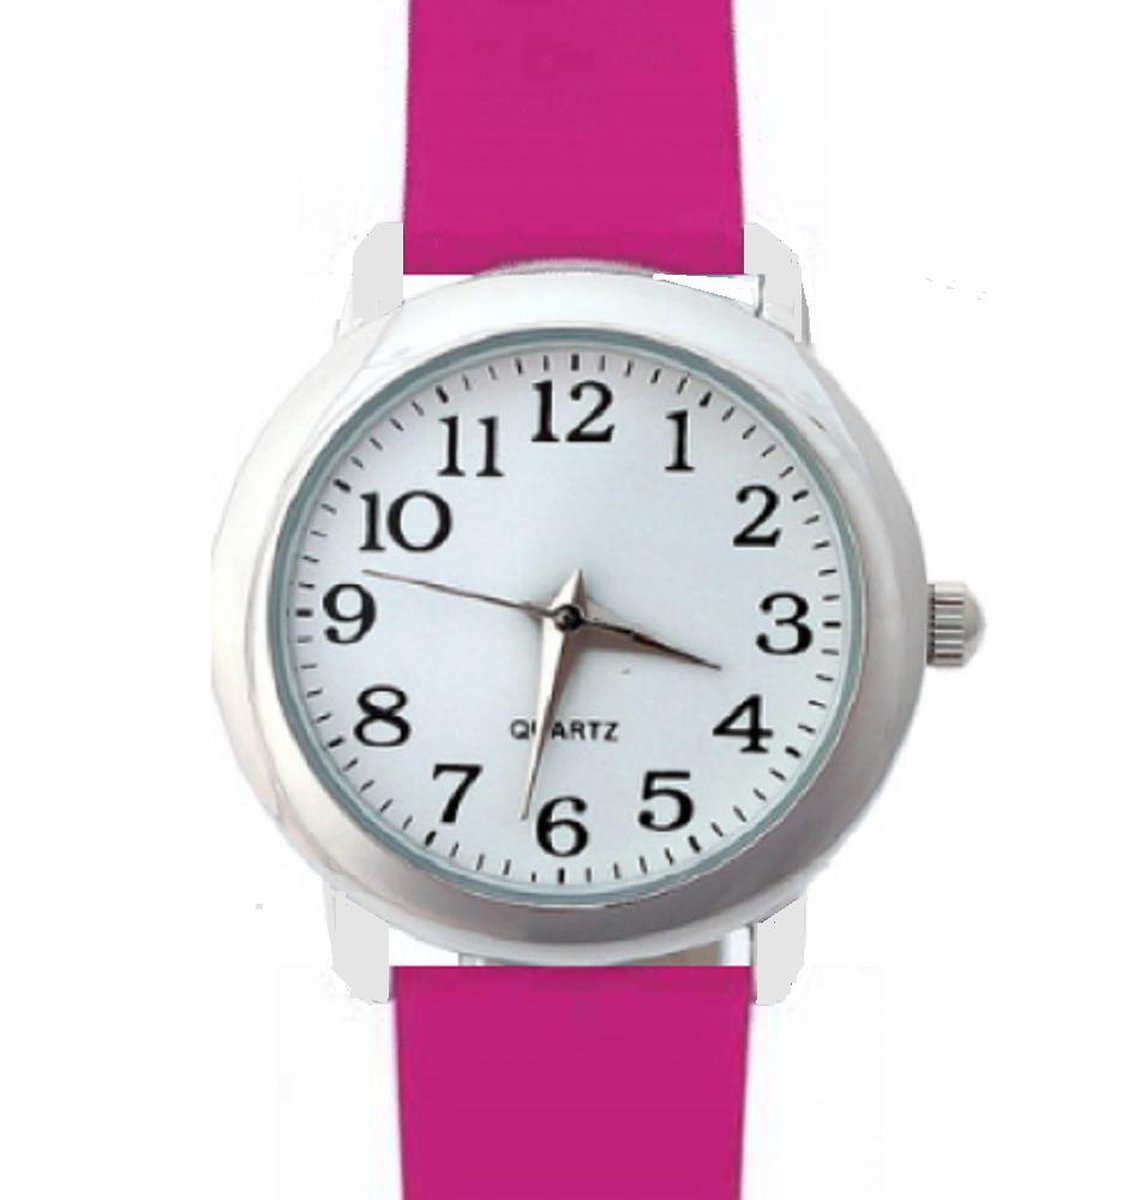 Horloge Midden roze- 27 mm- Genuine Leatherbandje- Volwassen- Kinder